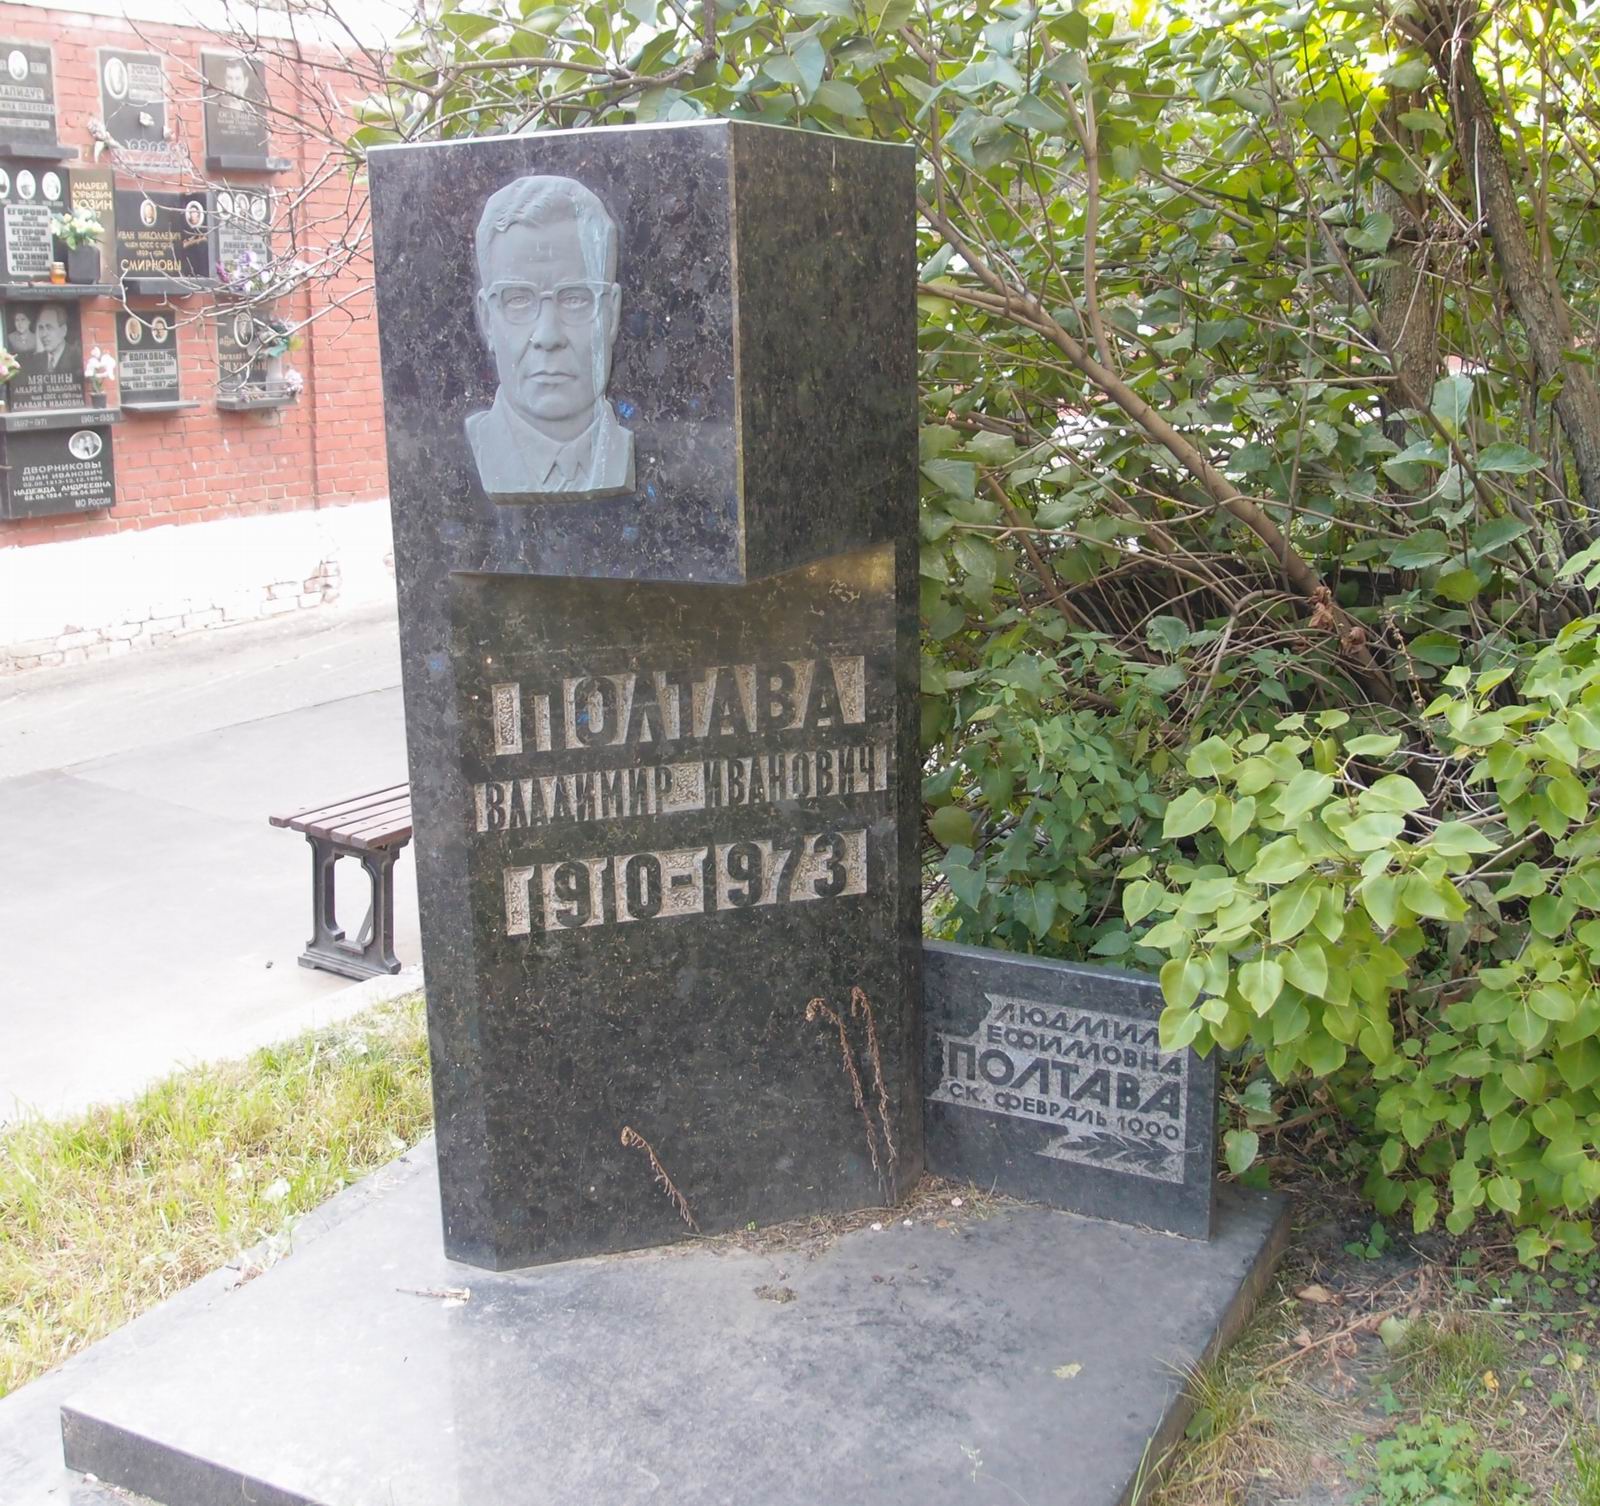 Памятник на могиле Полтавы В.И. (1910-1973), ск. Н.Мухотаева, арх. В.Чарнолусский, на Новодевичьем кладбище (7-3-28).